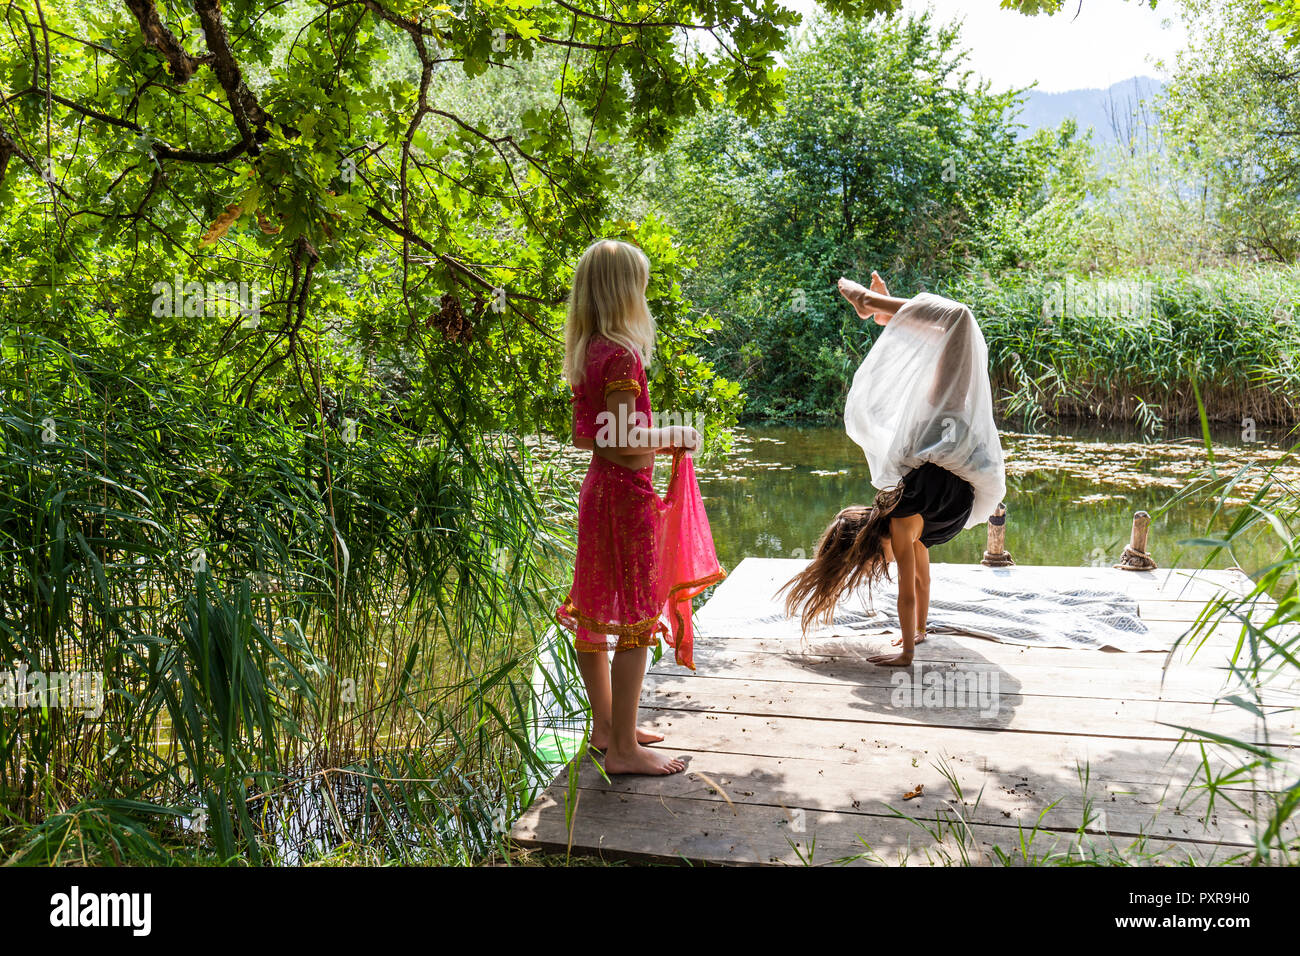 Mädchen an der Mole in einem Teich beobachten Freund tun einen Handstand Stockfoto